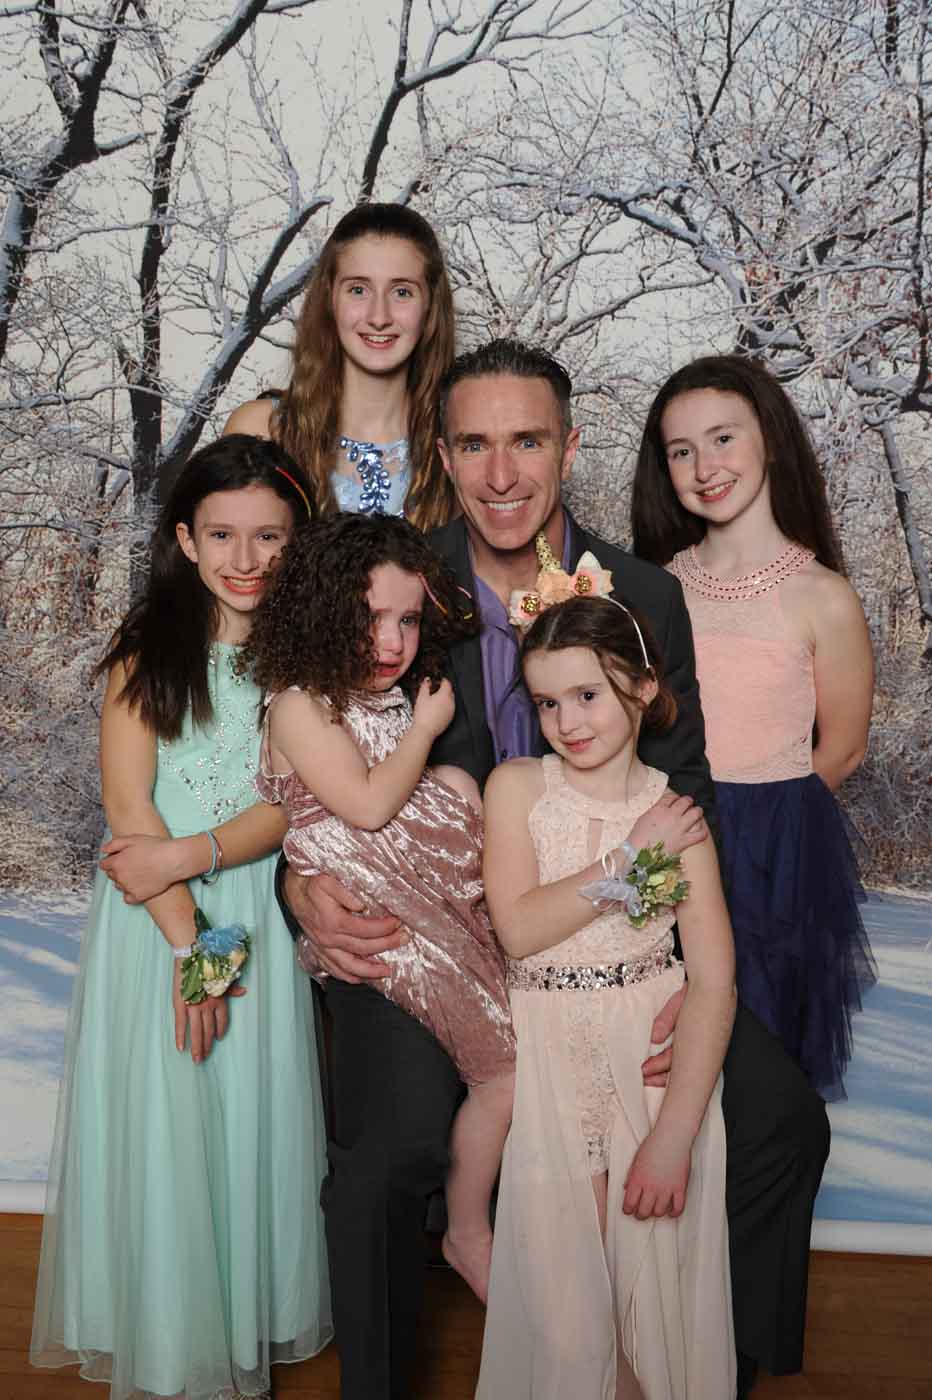 Man with 5 girls posing